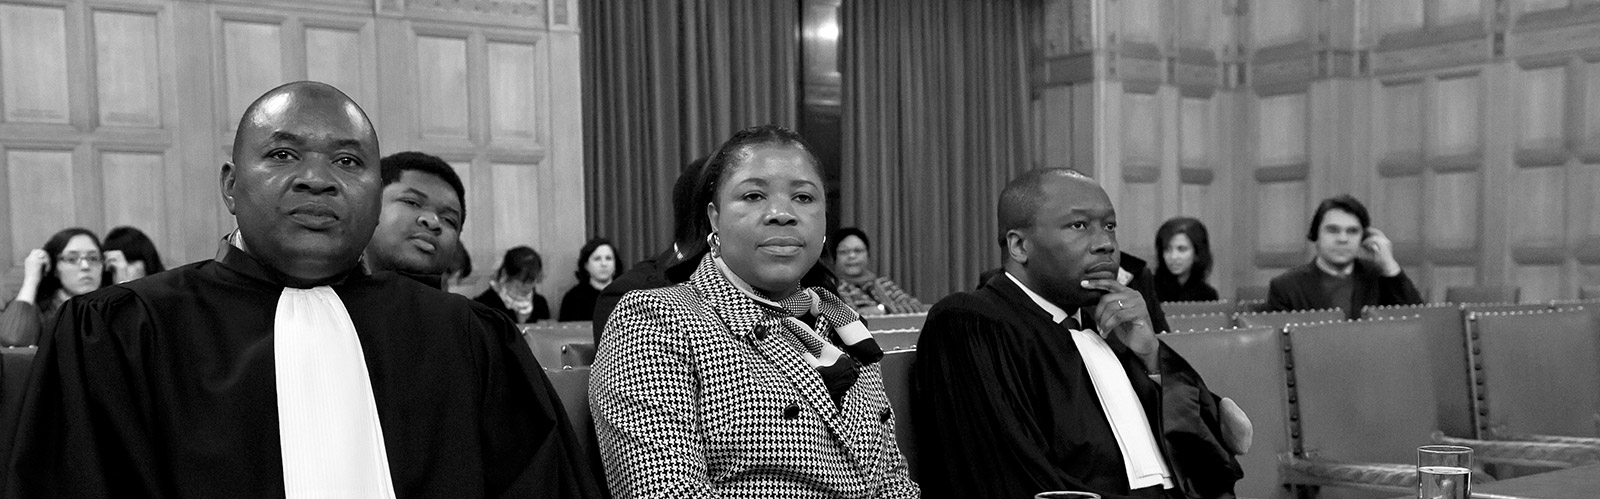 International Court of Justice.
30 November 2010.
Mme Mwenze Kisonga Pierrette, chef du service juridique et du contentieux à l’ambassade de la République démocratique du Congo à Bruxelles.
